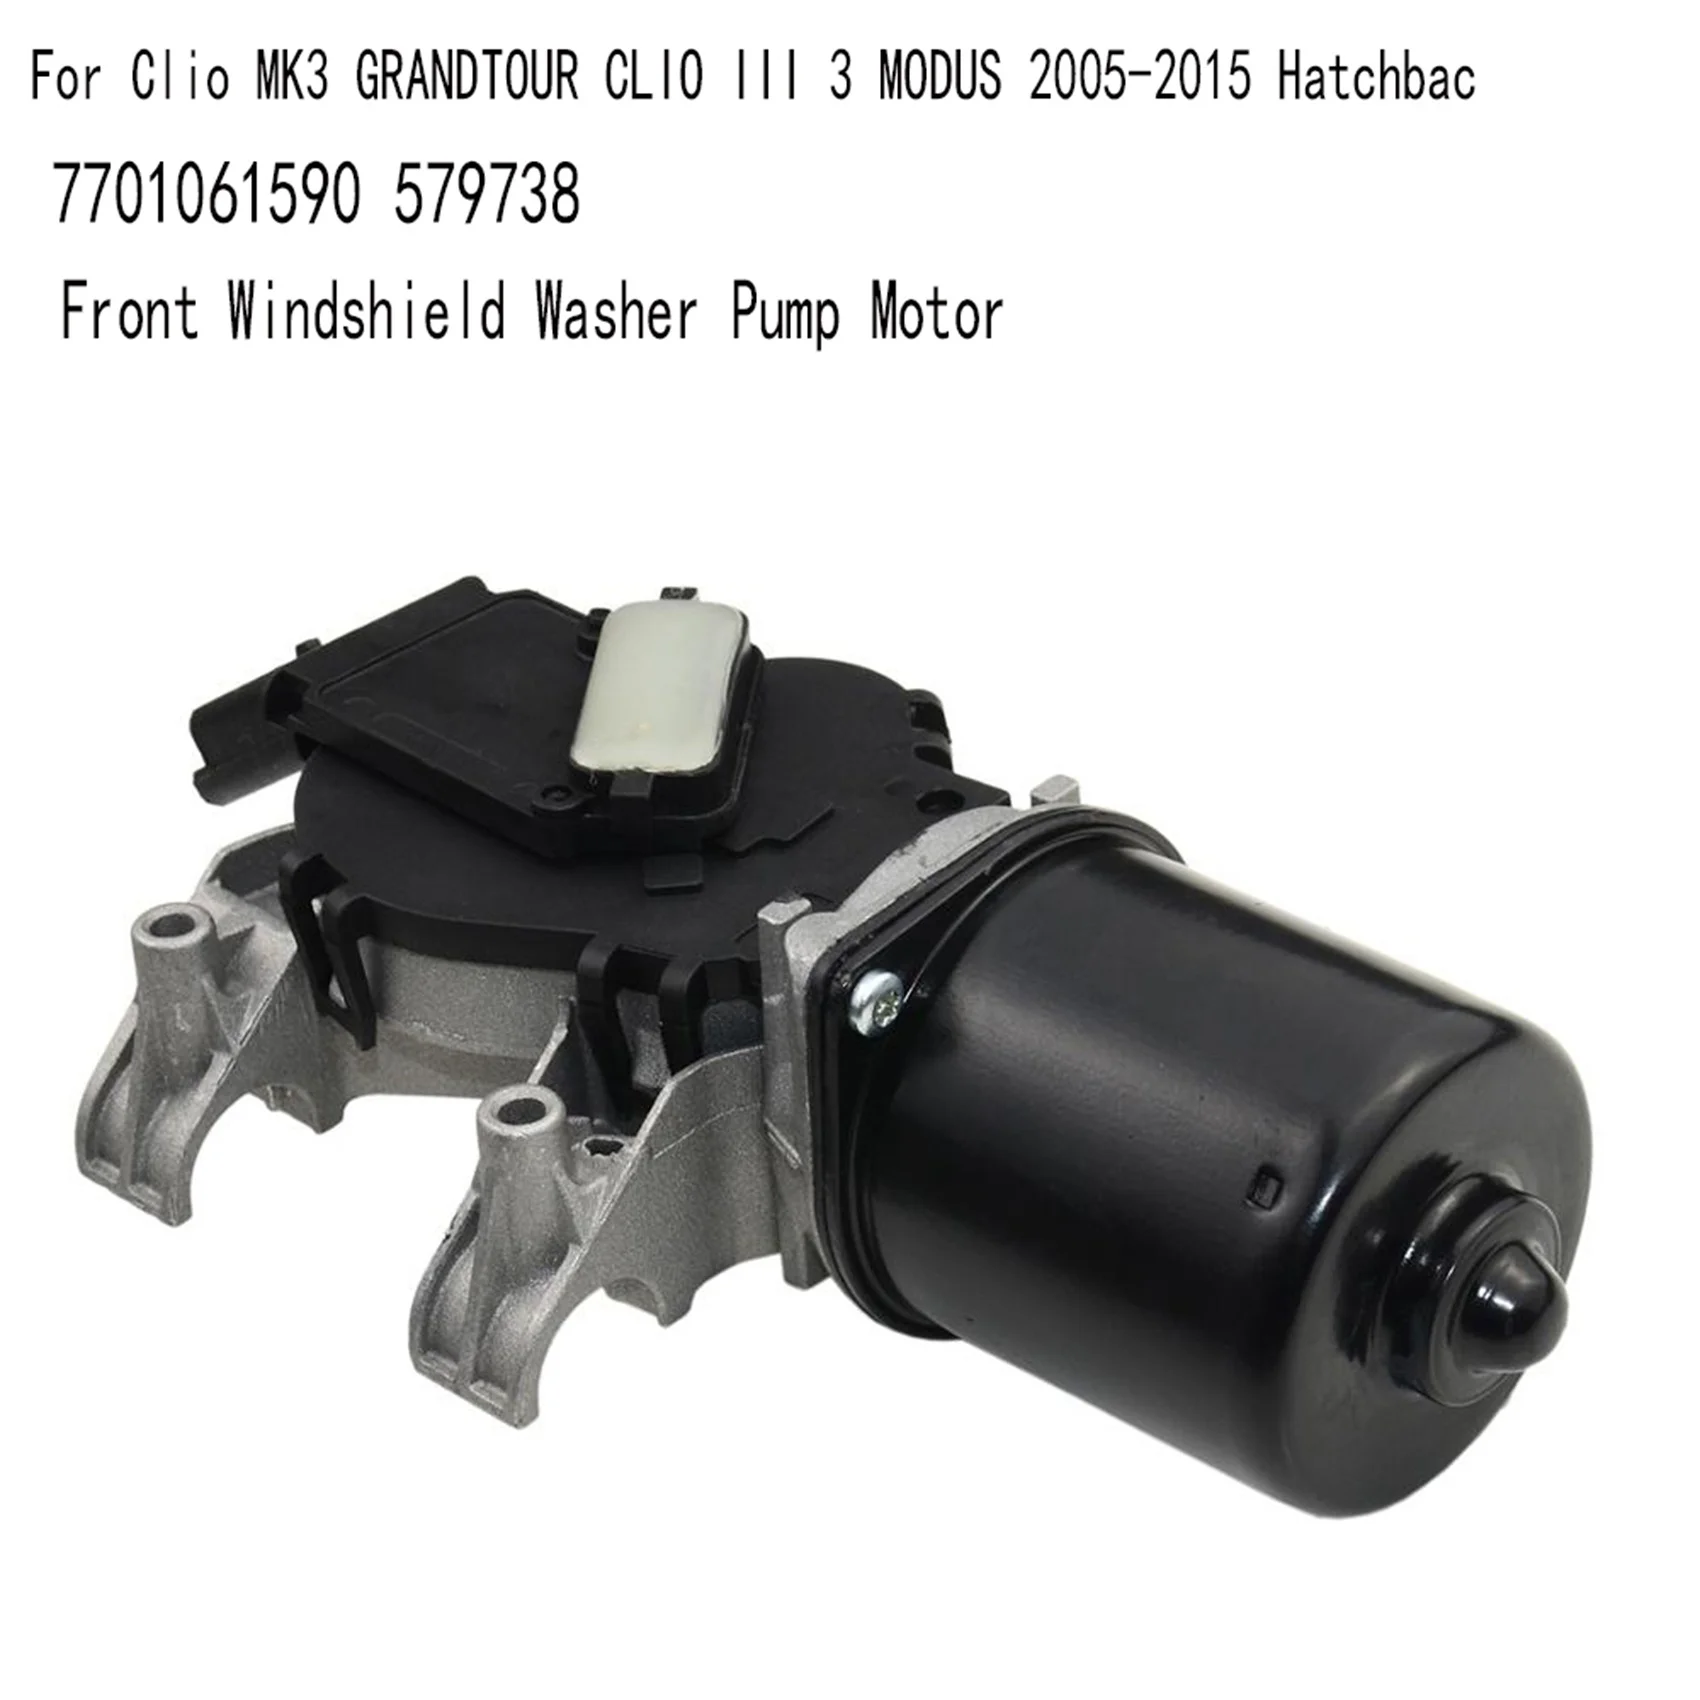 Мотор Насоса Омывателя переднего ветрового стекла для Хэтчбека MK3 GRANDTOUR III 3 2005-2015 7701061590 579738 . ' - ' . 3